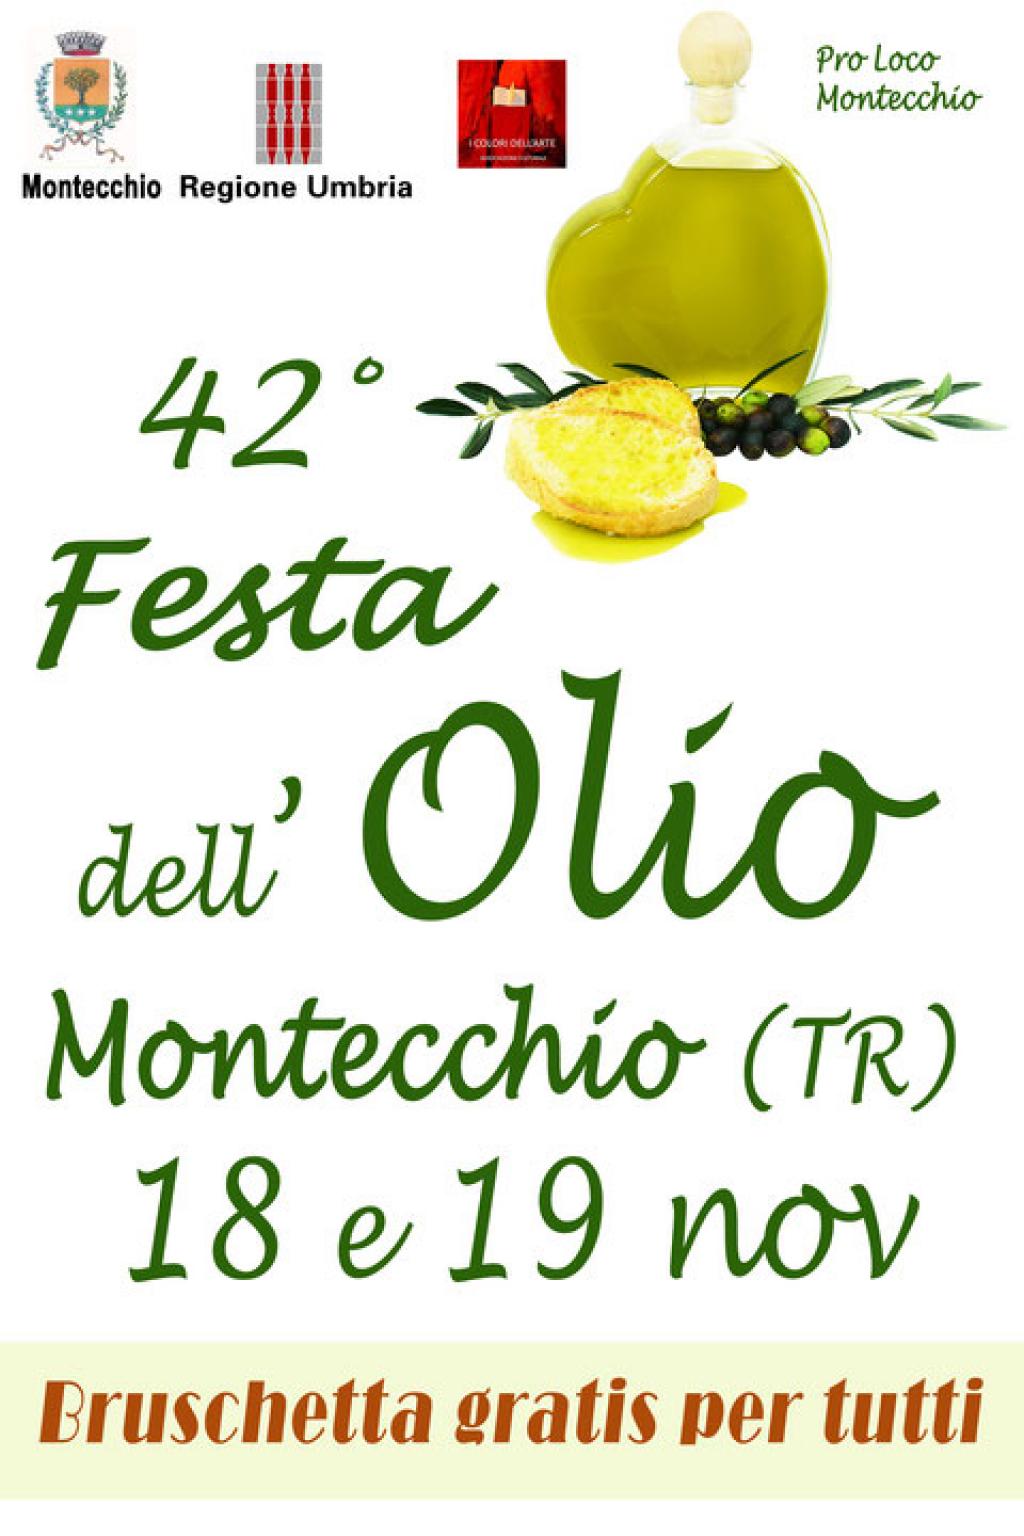 42° Festa dell'Olio Montecchio 